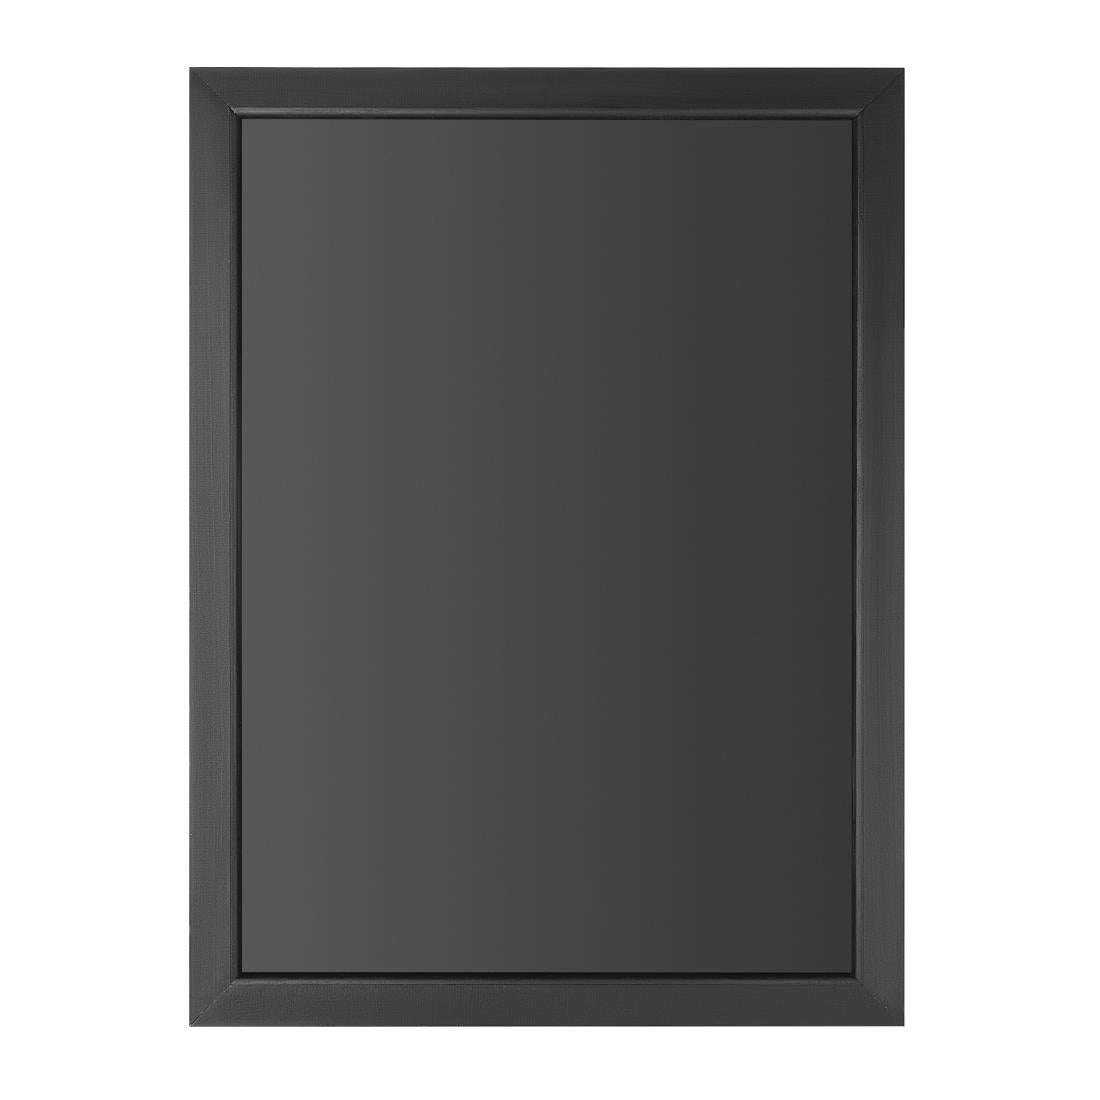 CU991 Olympia Wallboard Black Wooden Frame 600x800mm